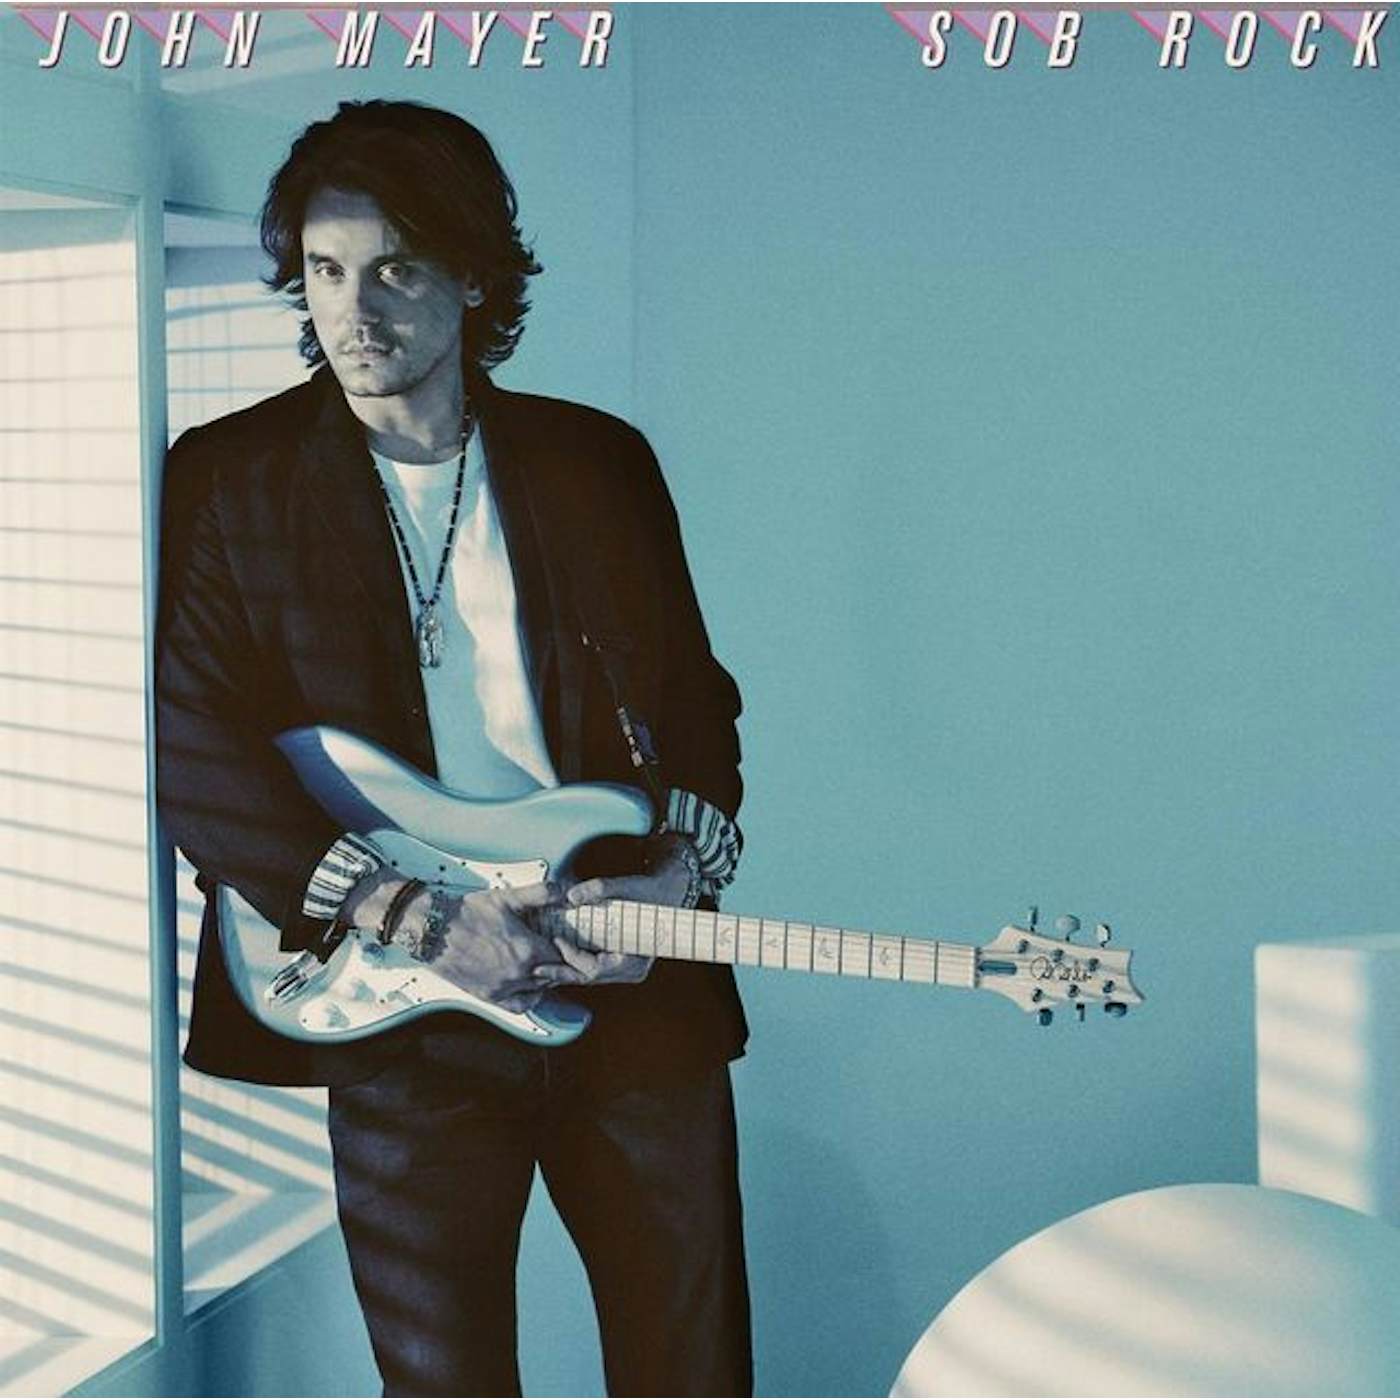 John Mayer Sob Rock Vinyl Record